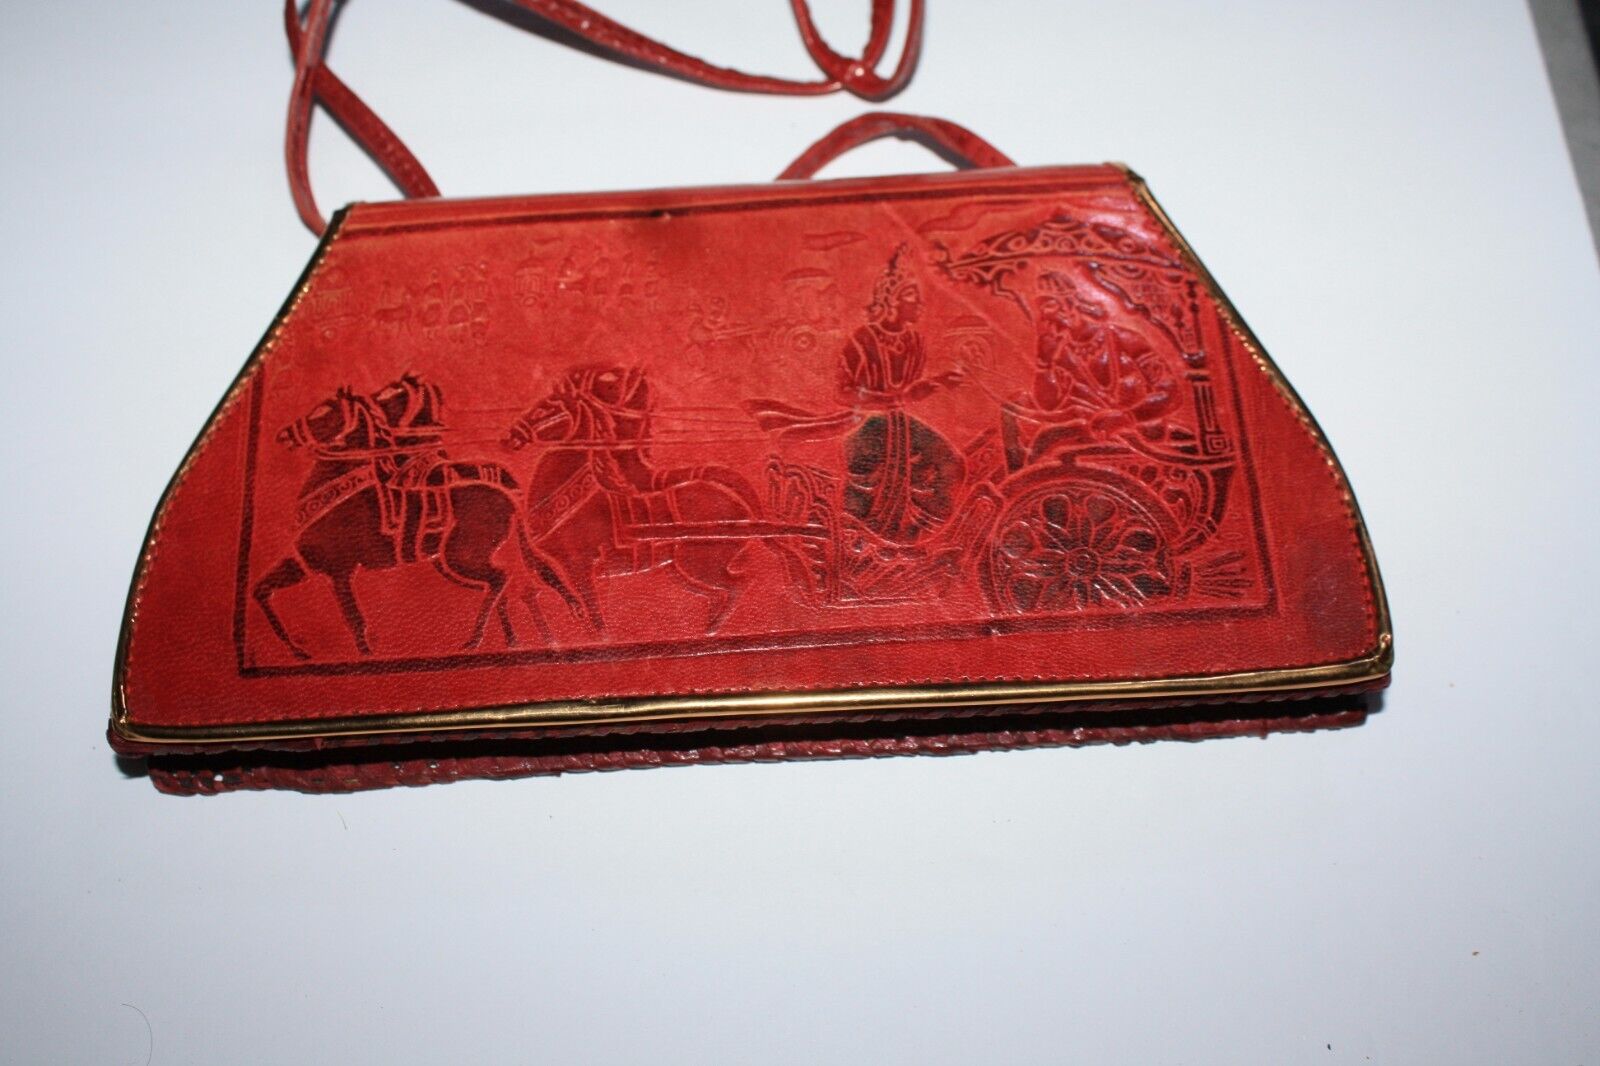 Vintage Genuine Leather Shoulder Bag - image 1